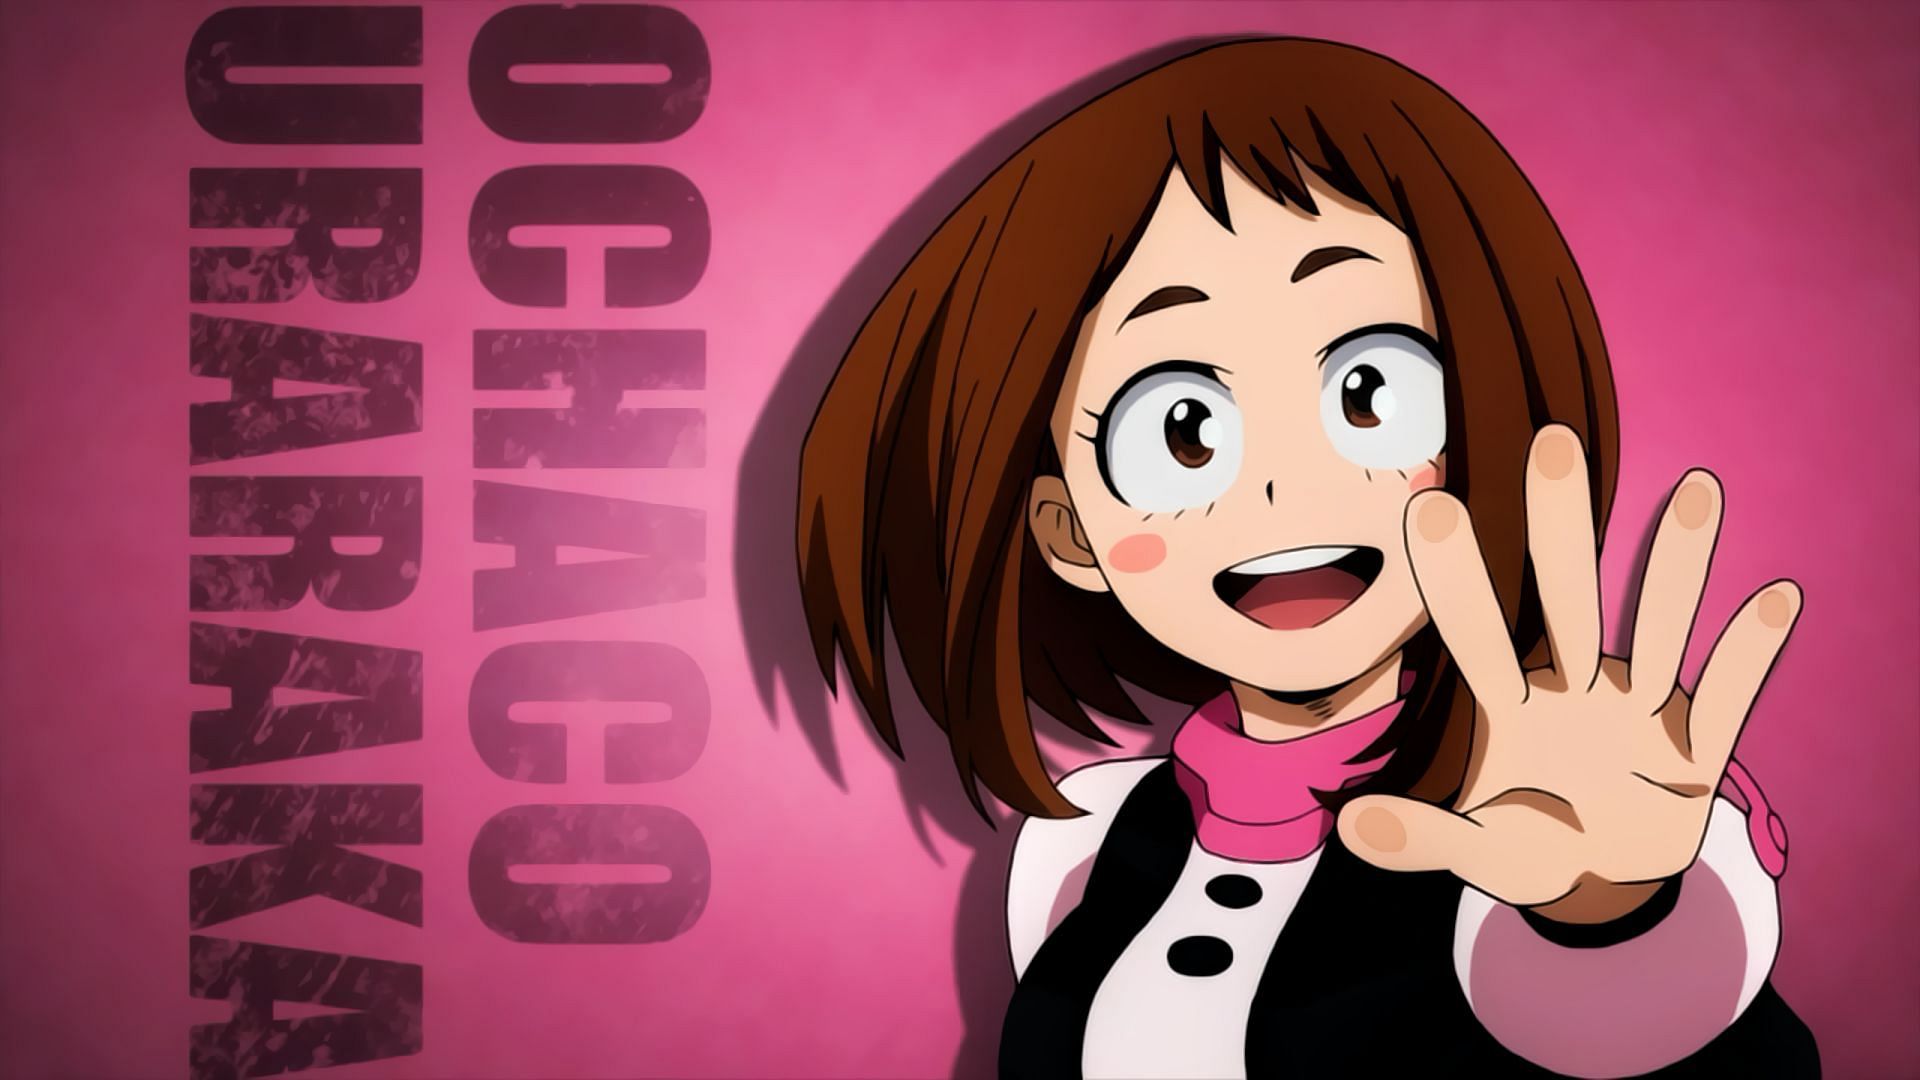 Ochaco Uraraka cover from the anime (Image Via Bones)